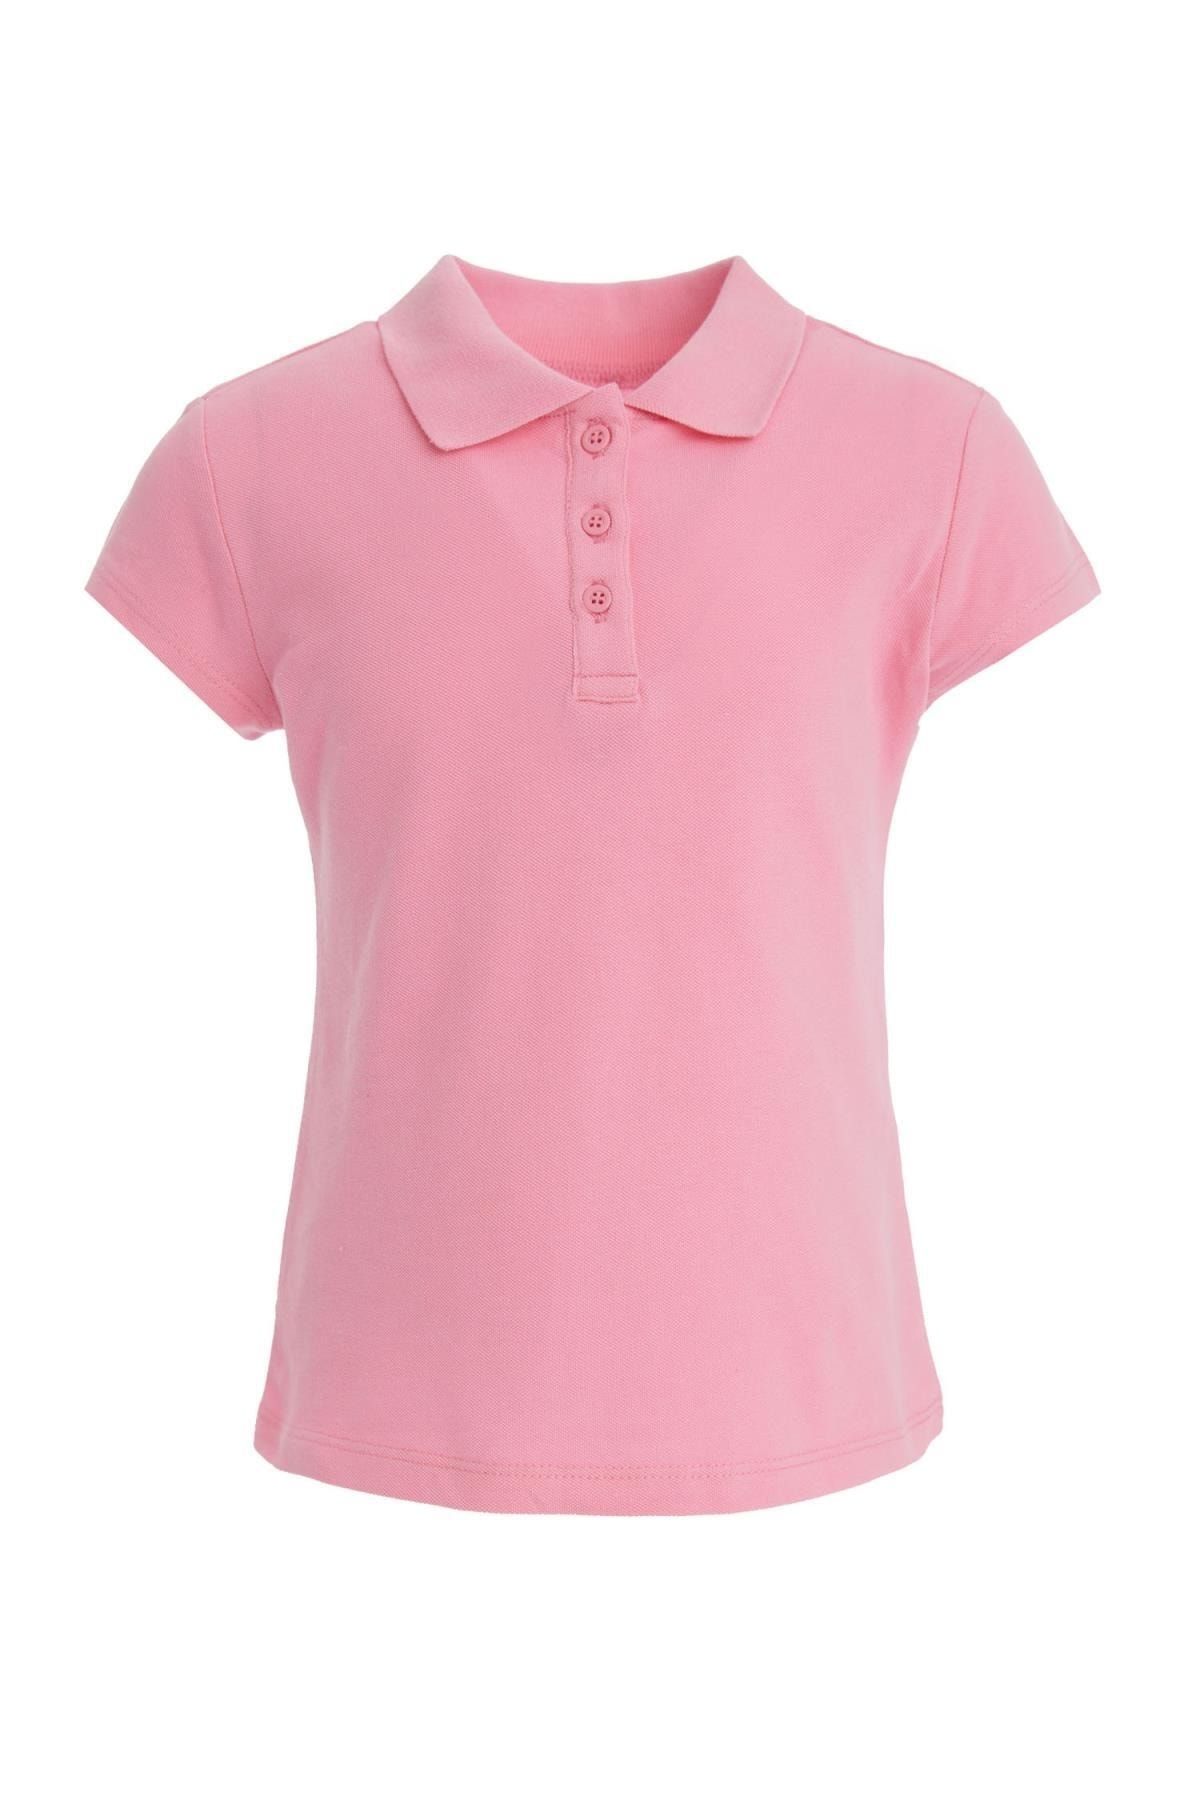 Defacto Kız Çocuk Okula Dönüş Basic Kısa Kollu Polo Tişört